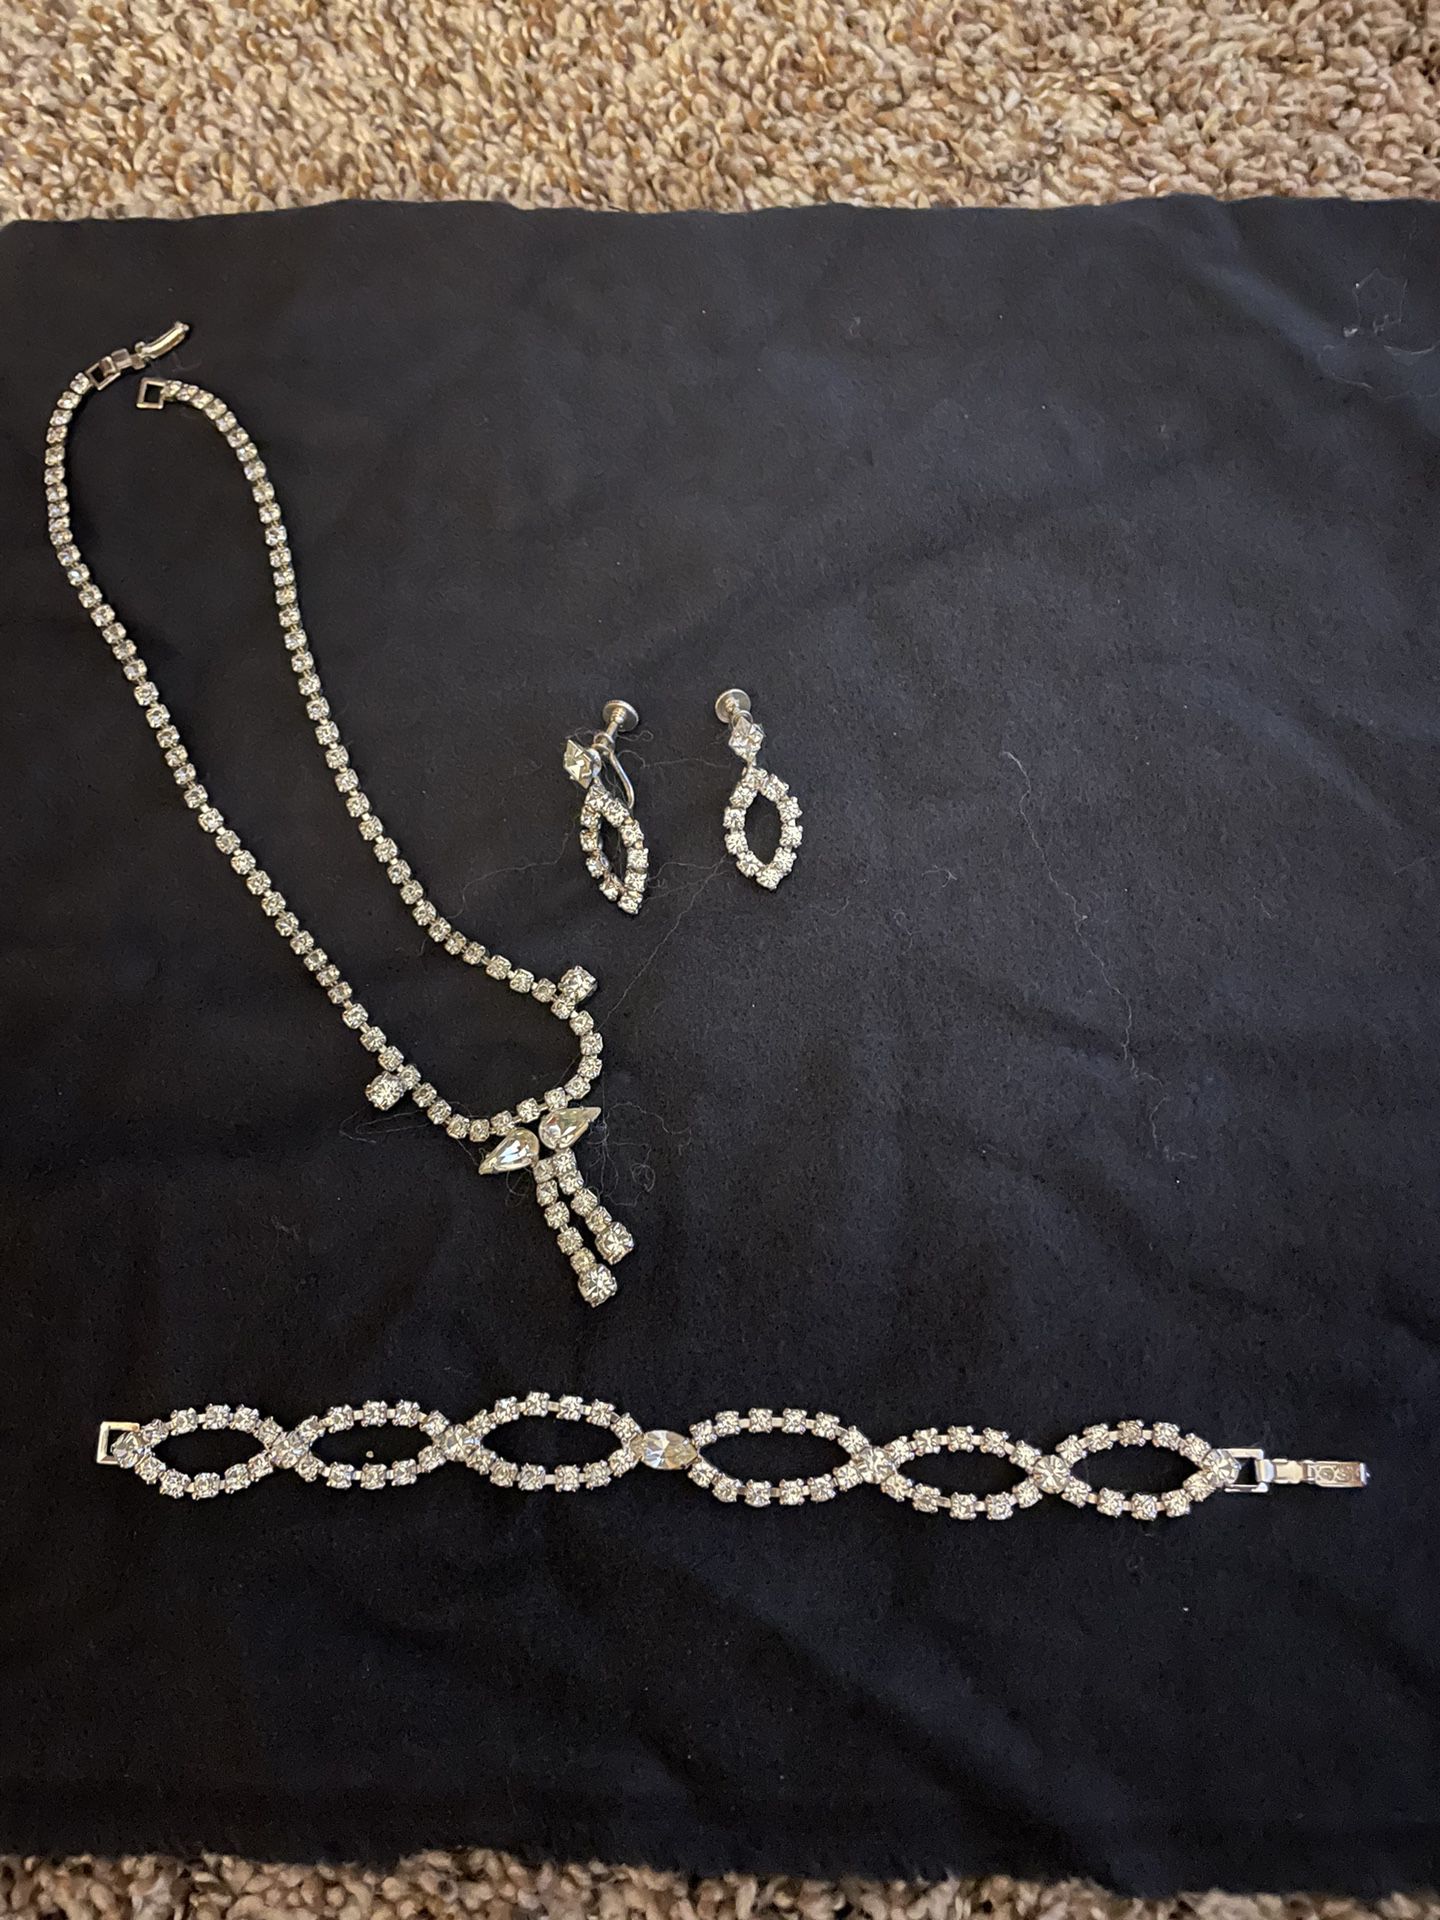 Set of Rhinestone Jewelry: Necklace, Bracelet, Earrings 